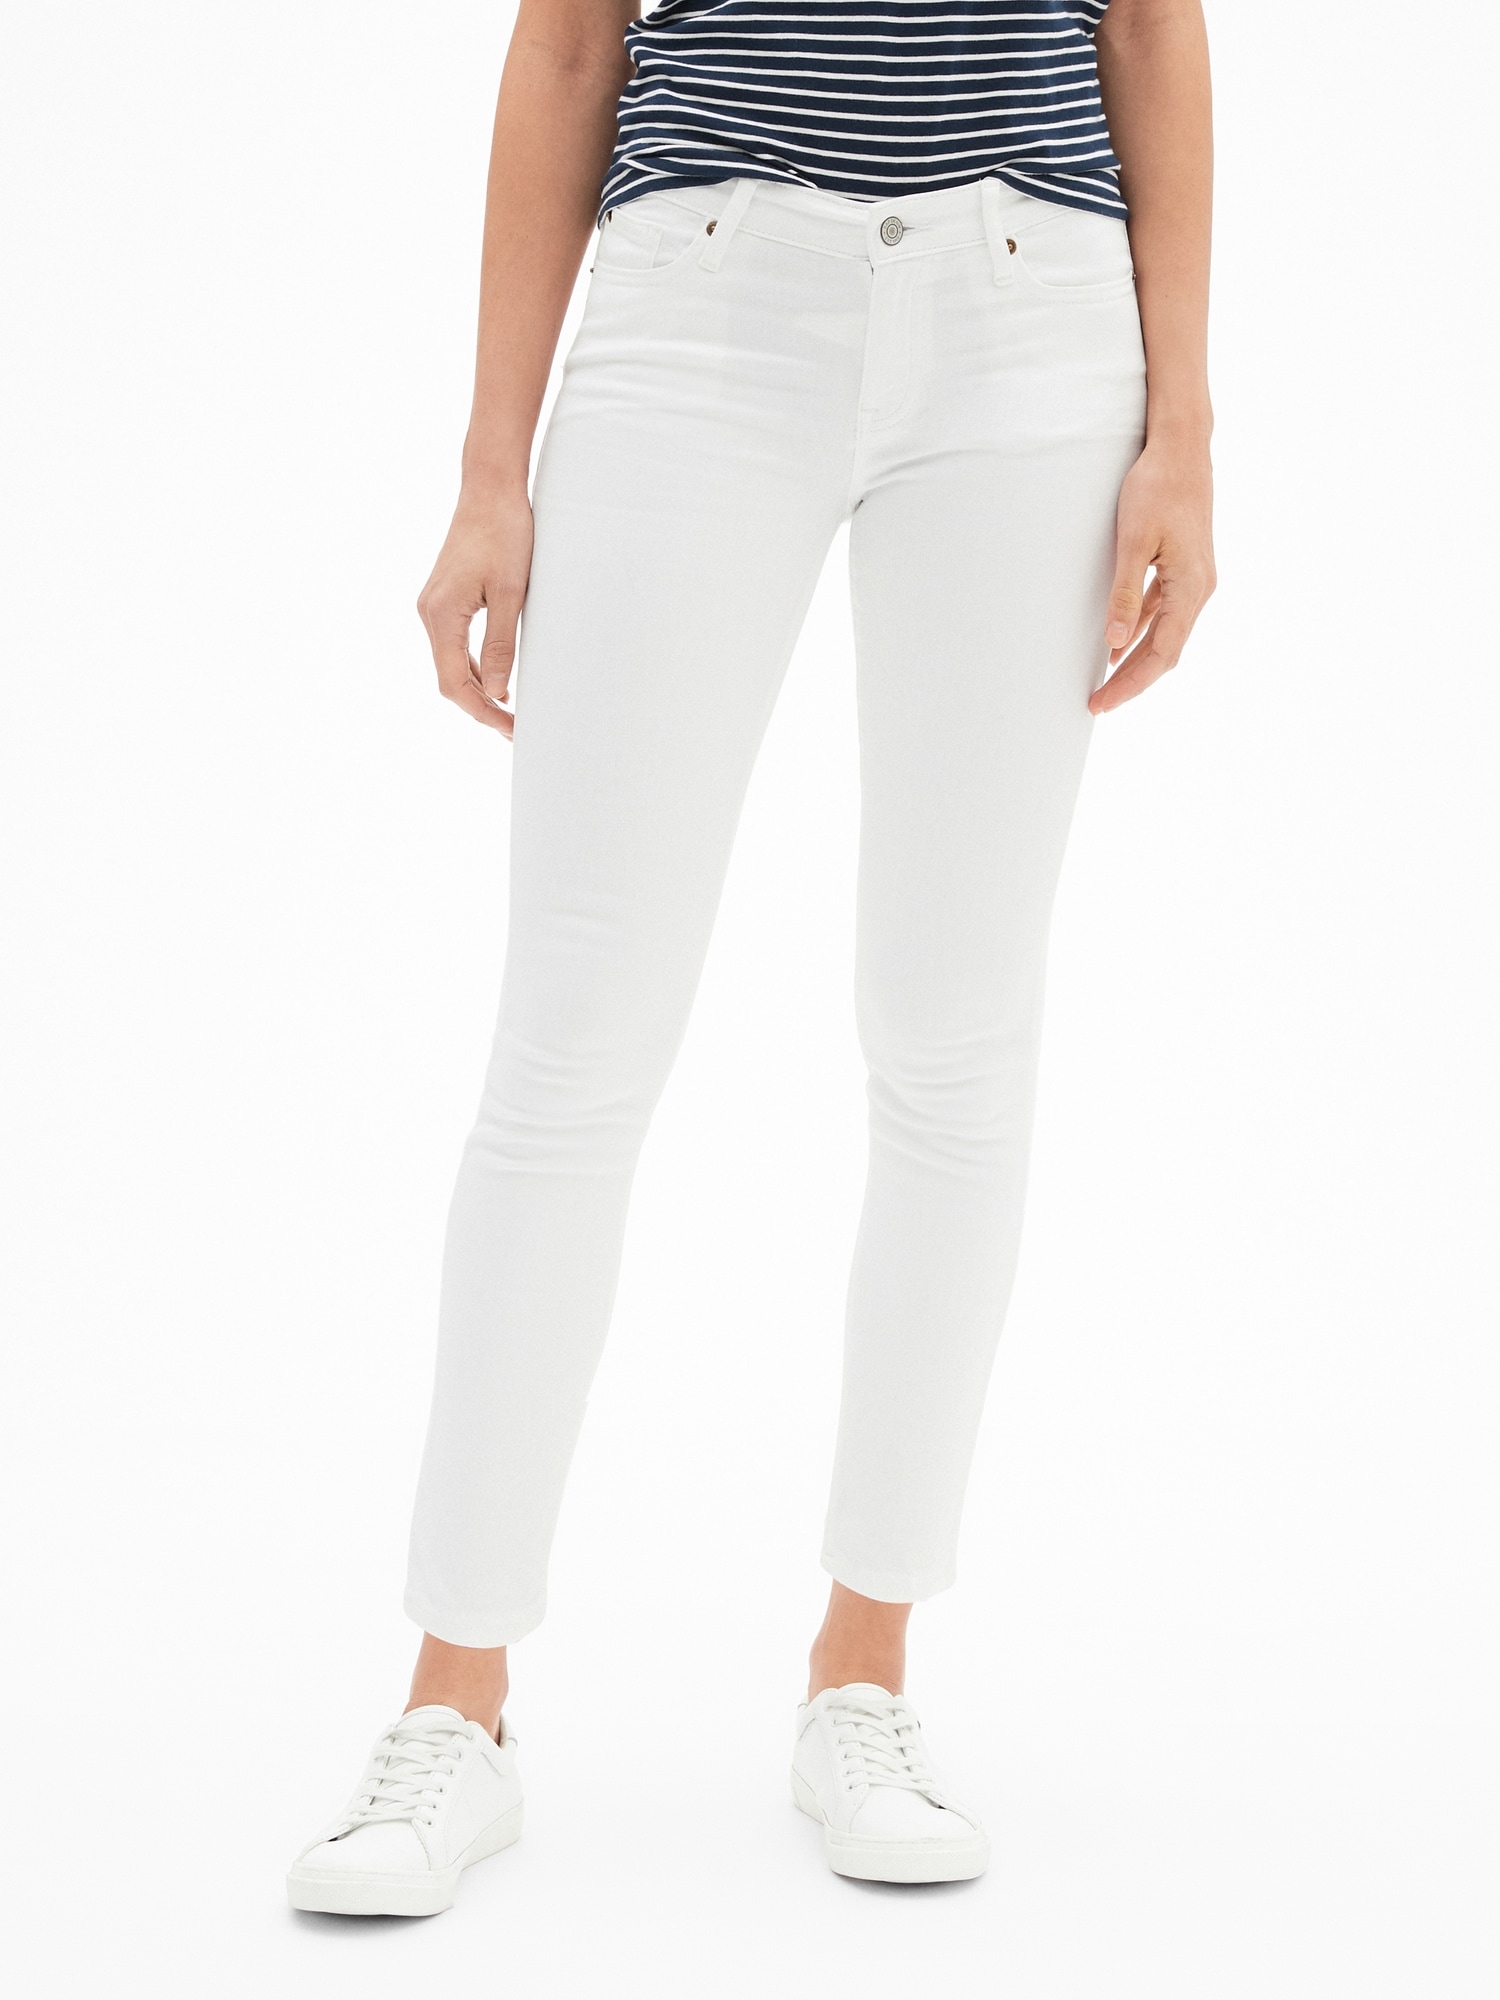 white legging jeans